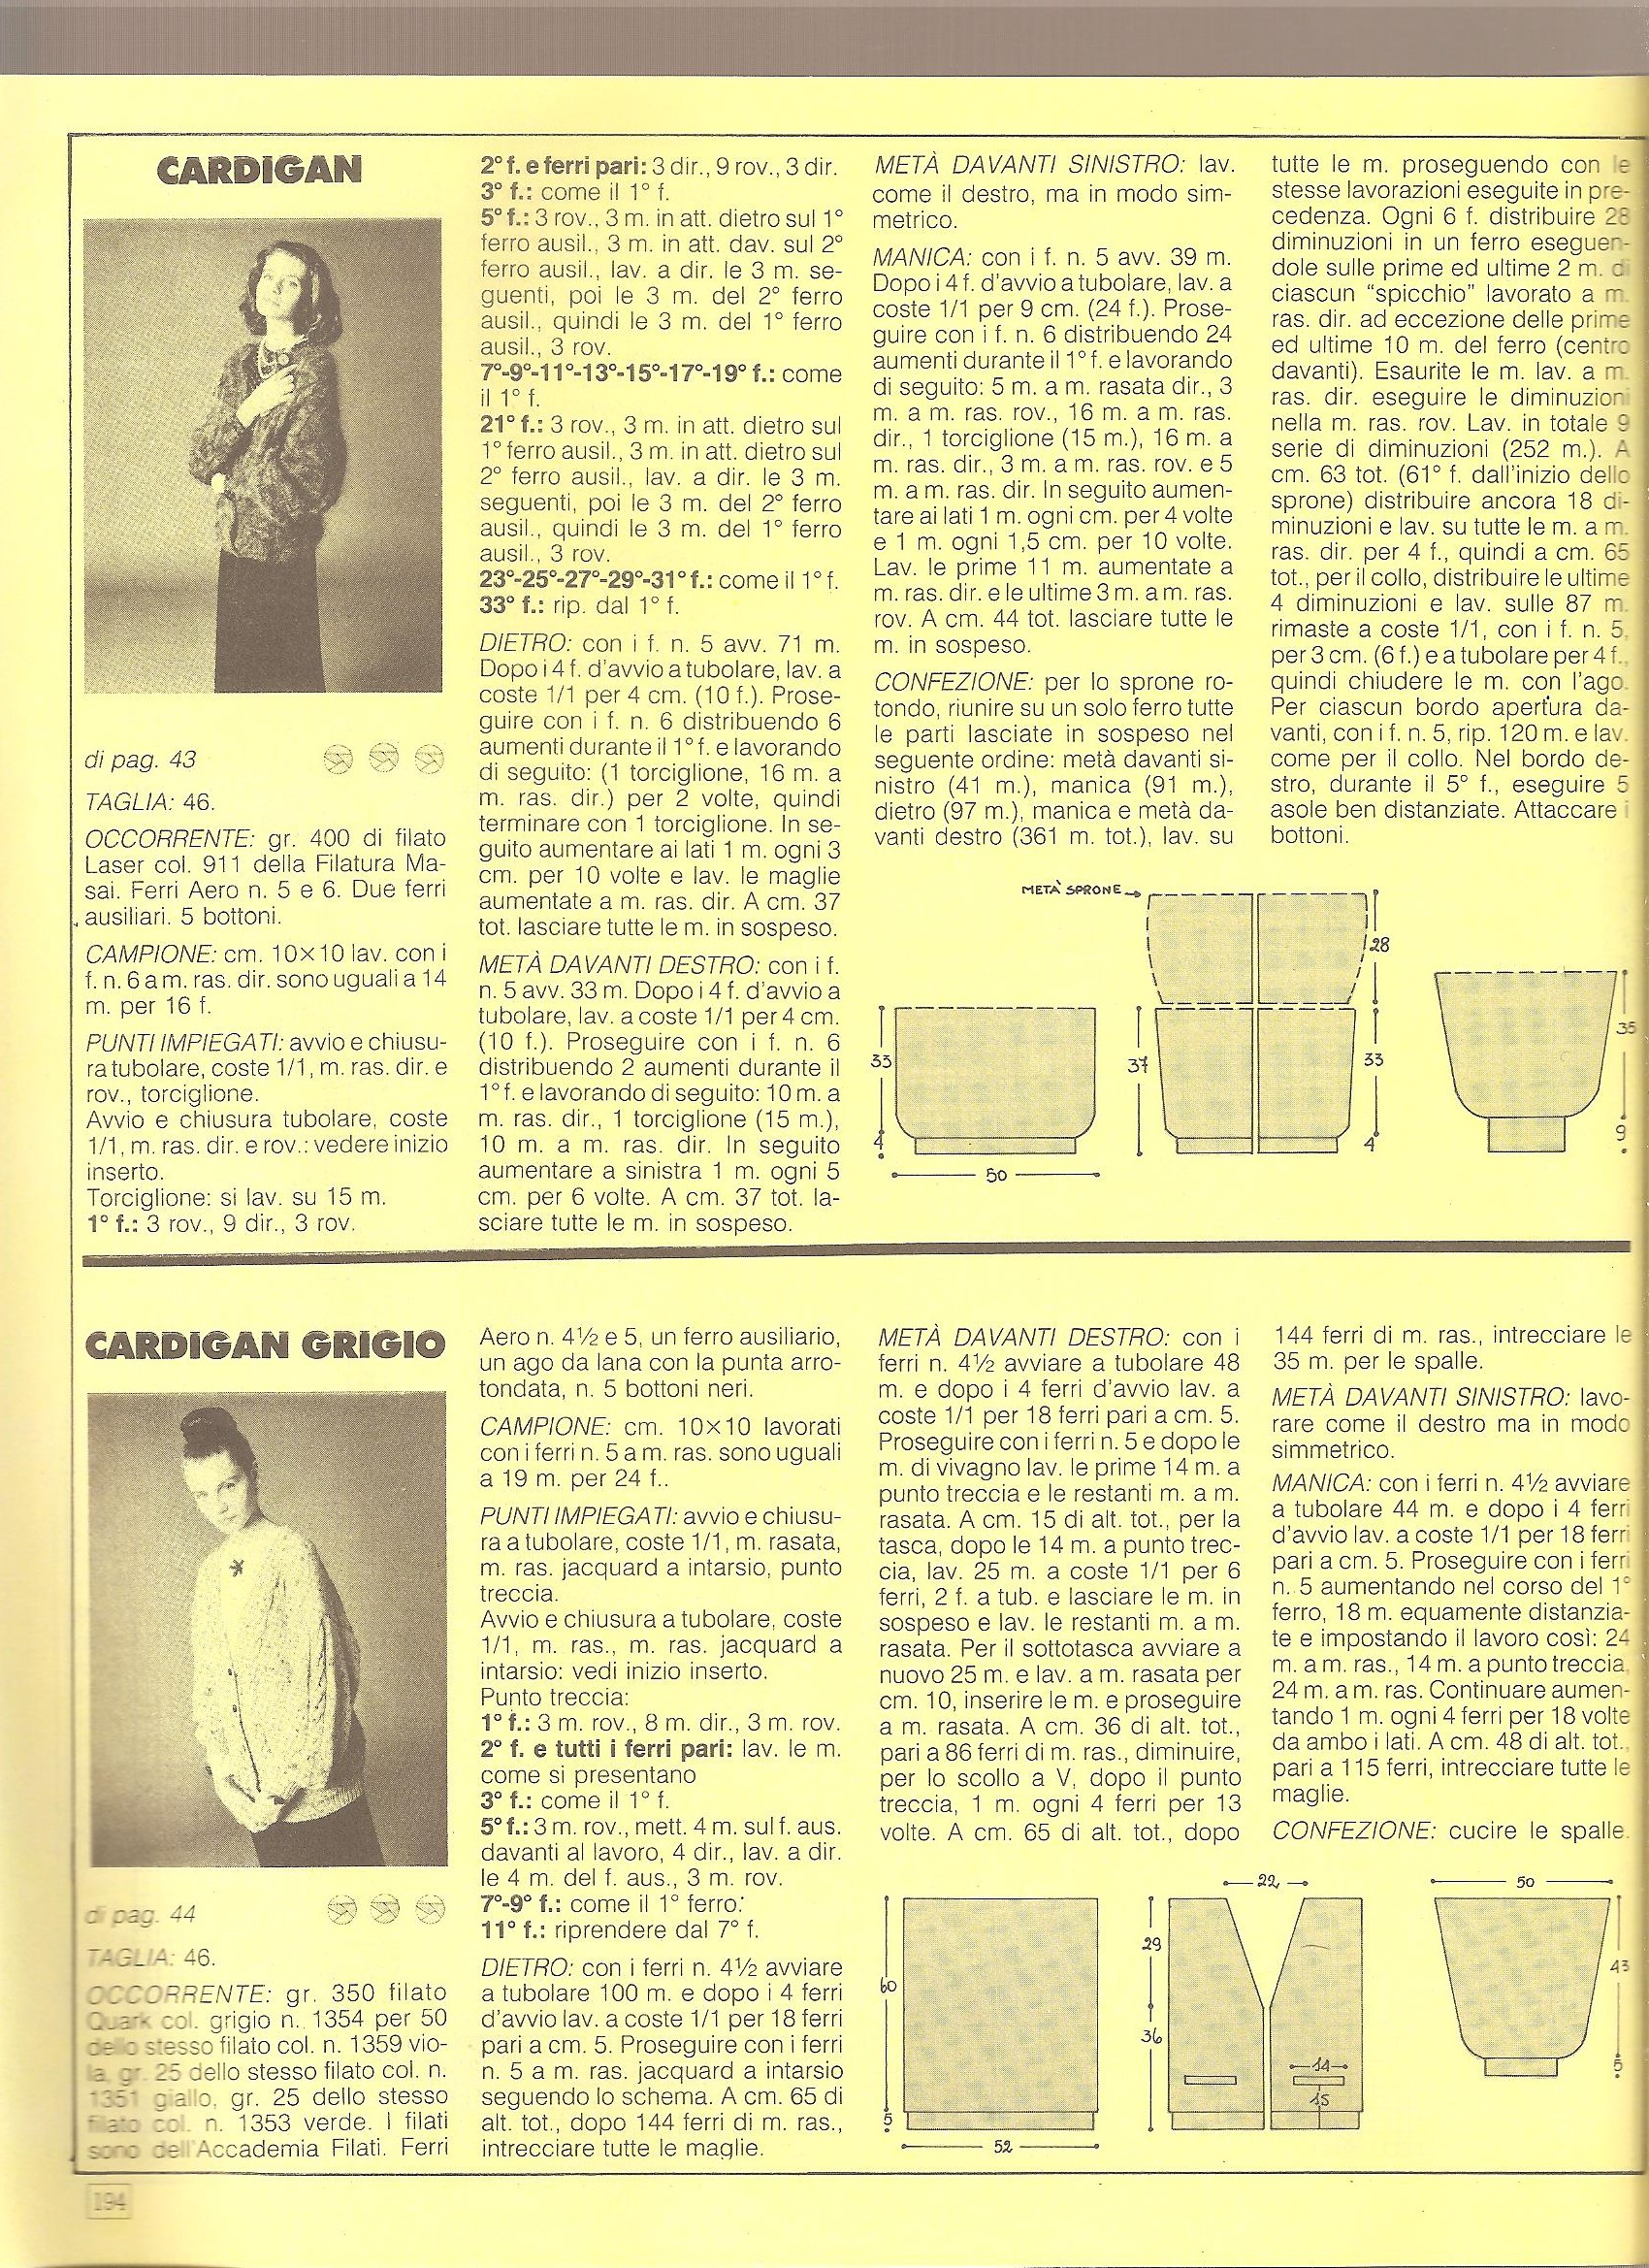 Gray cardigan knit fashion knitting pattern (2)